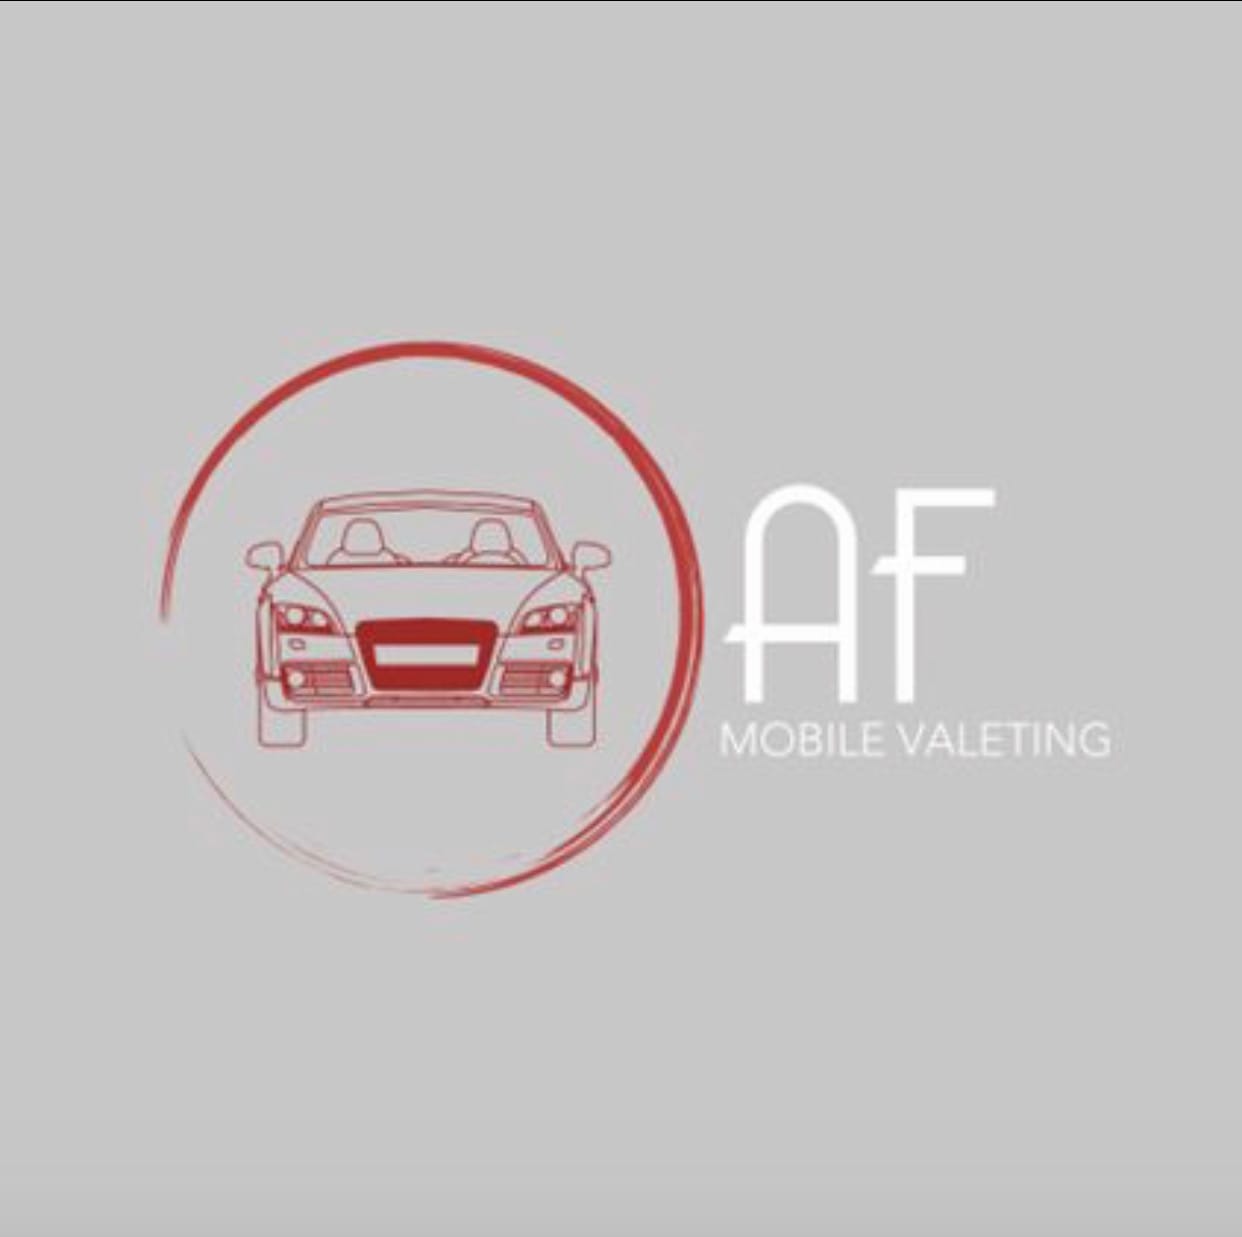 AF Mobile Valeting